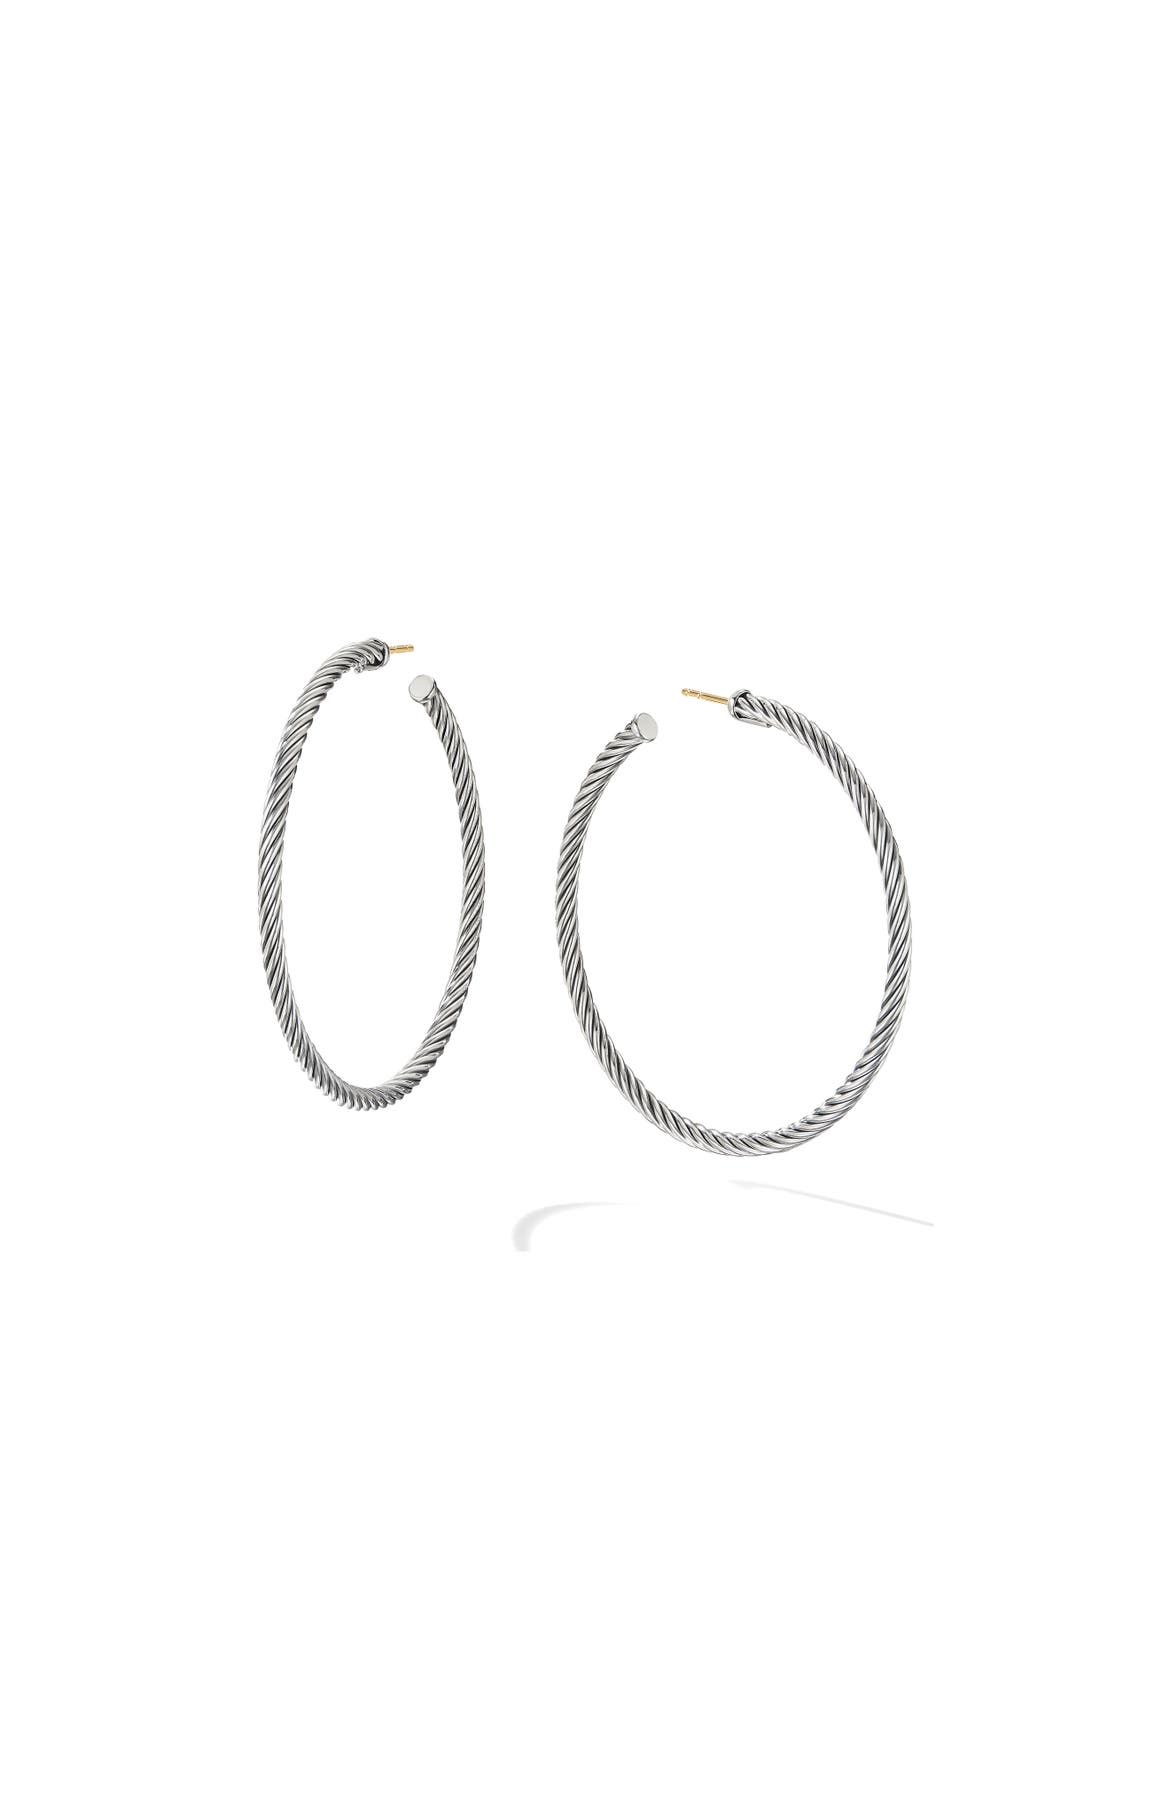 David Yurman Large Cable Hoop Earrings | Nordstrom